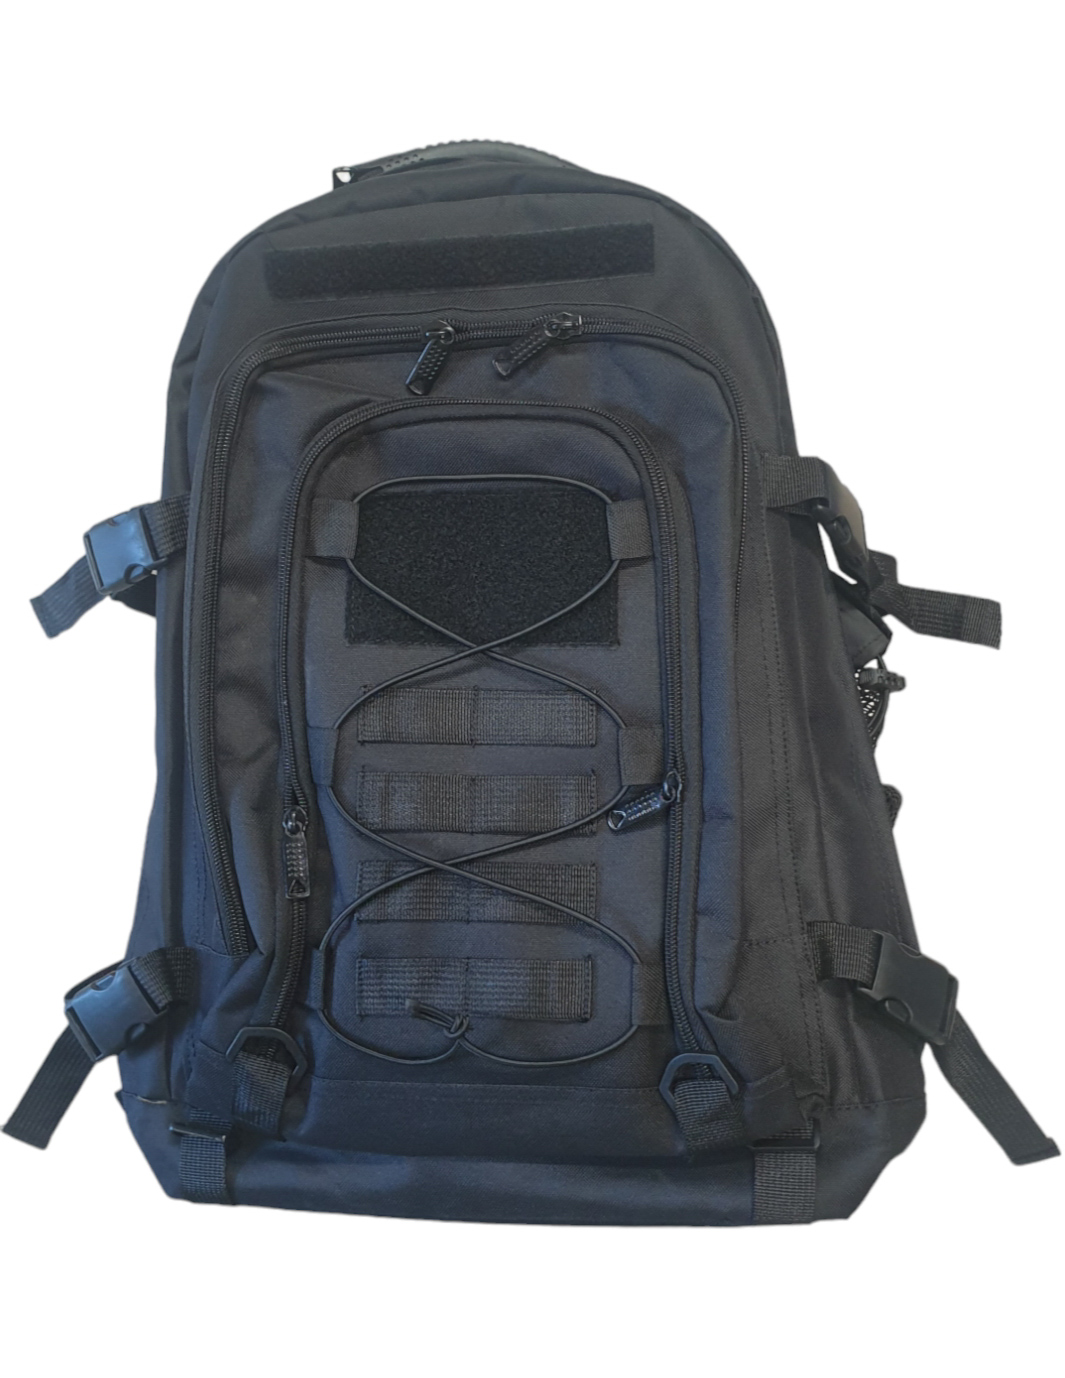 DYE Backpack, Black - USED